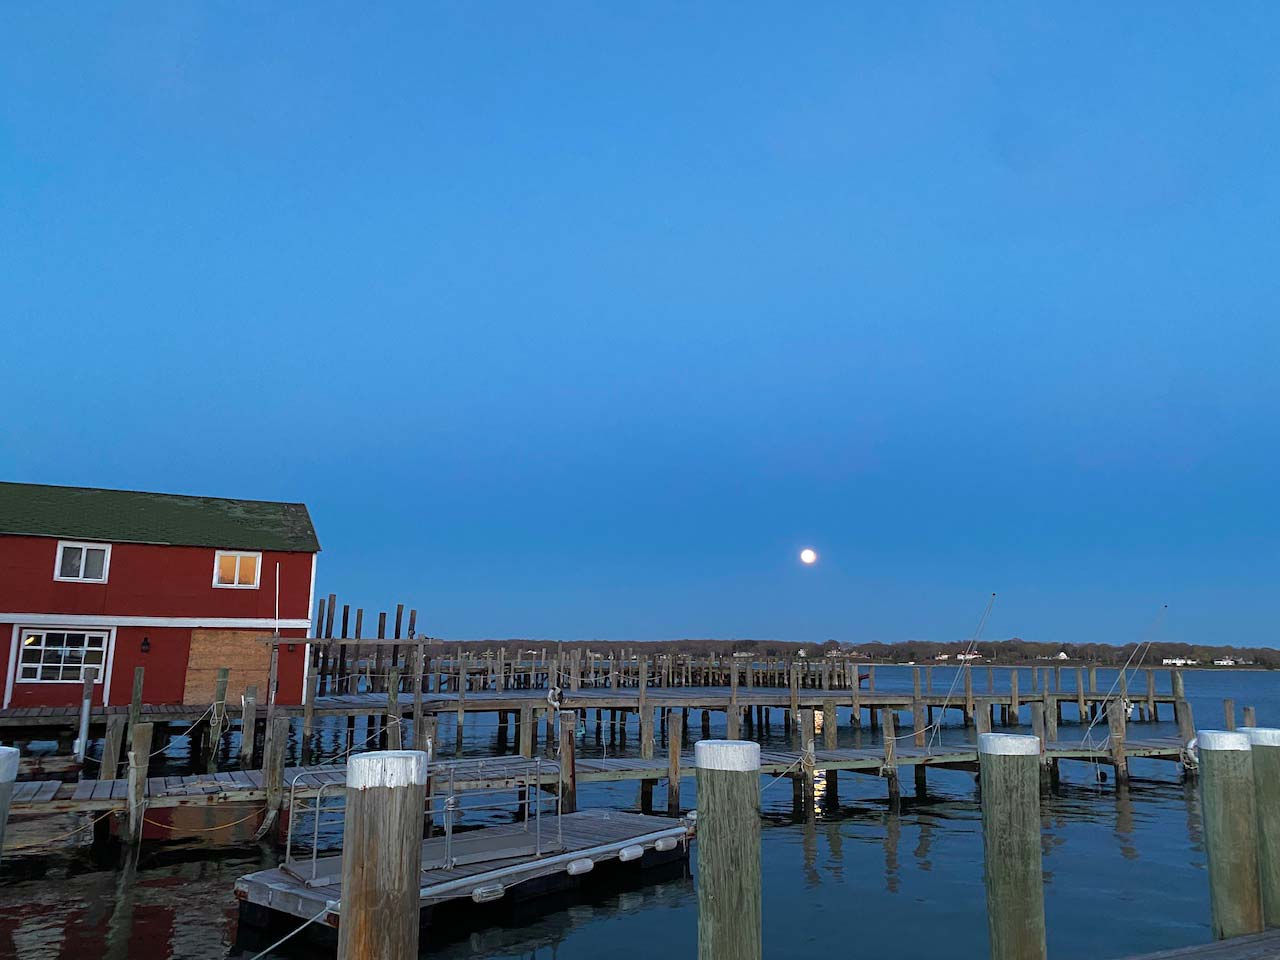 The Menhaden Full moon over Greenport Harbor